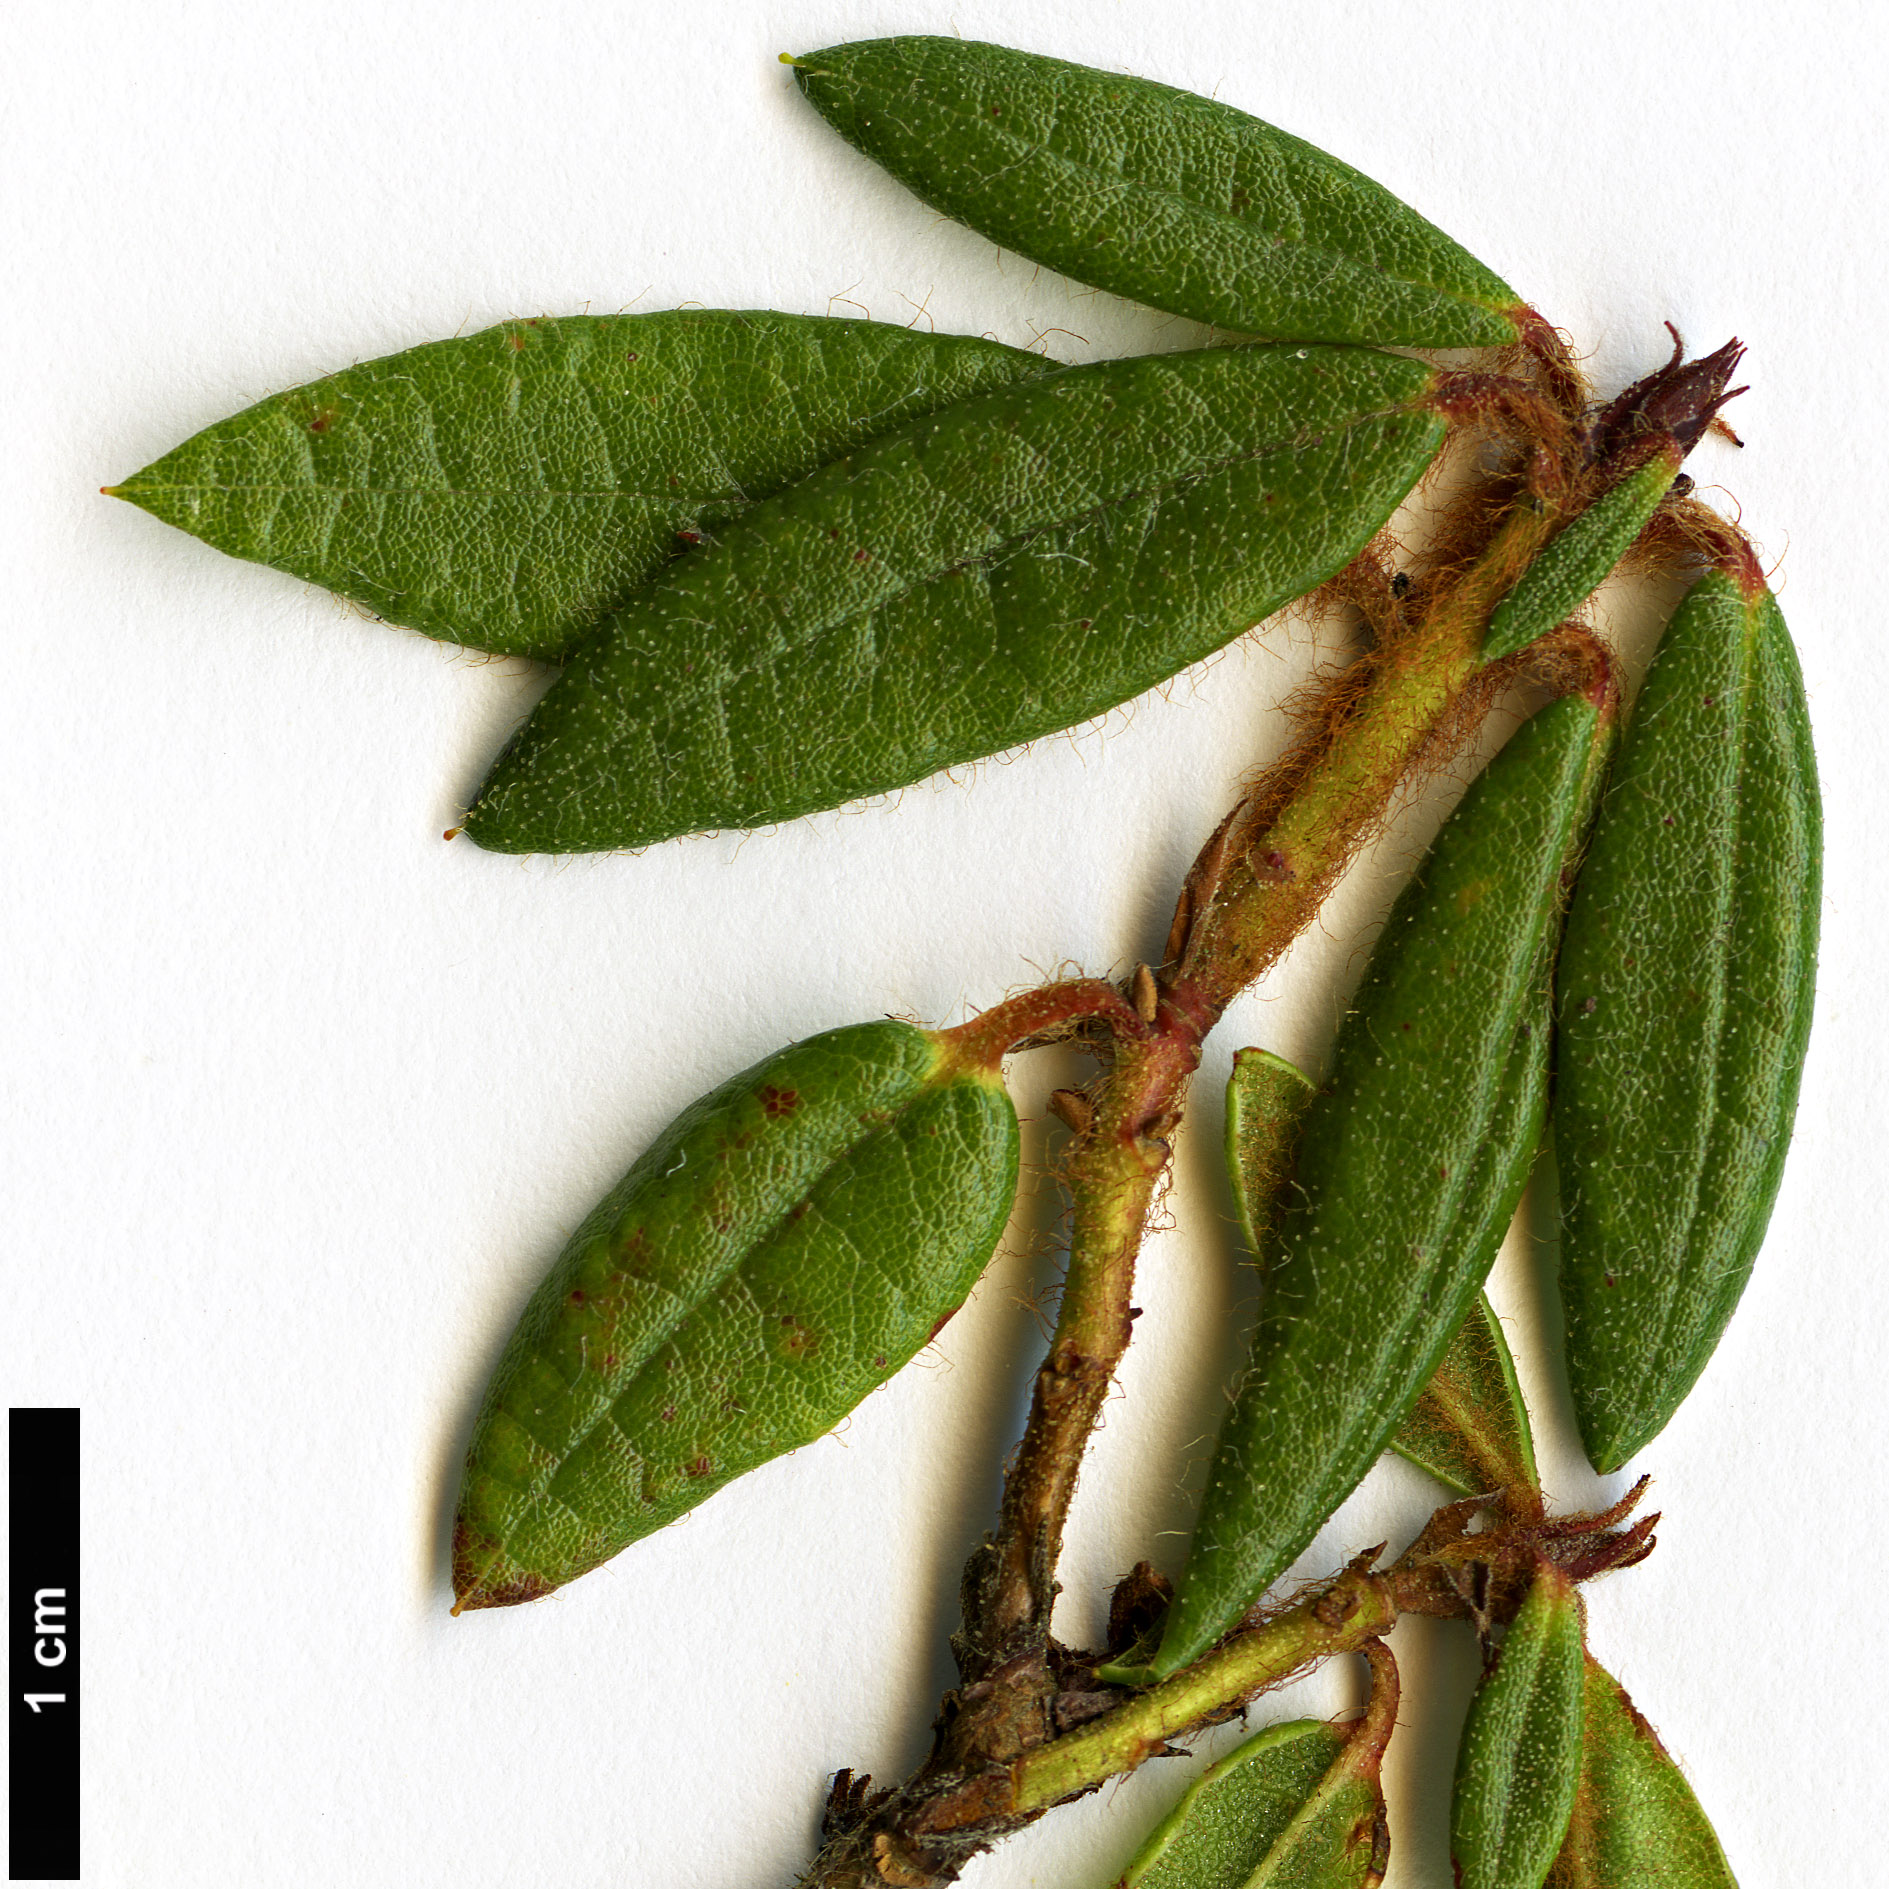 High resolution image: Family: Ericaceae - Genus: Rhododendron - Taxon: hypoleucum